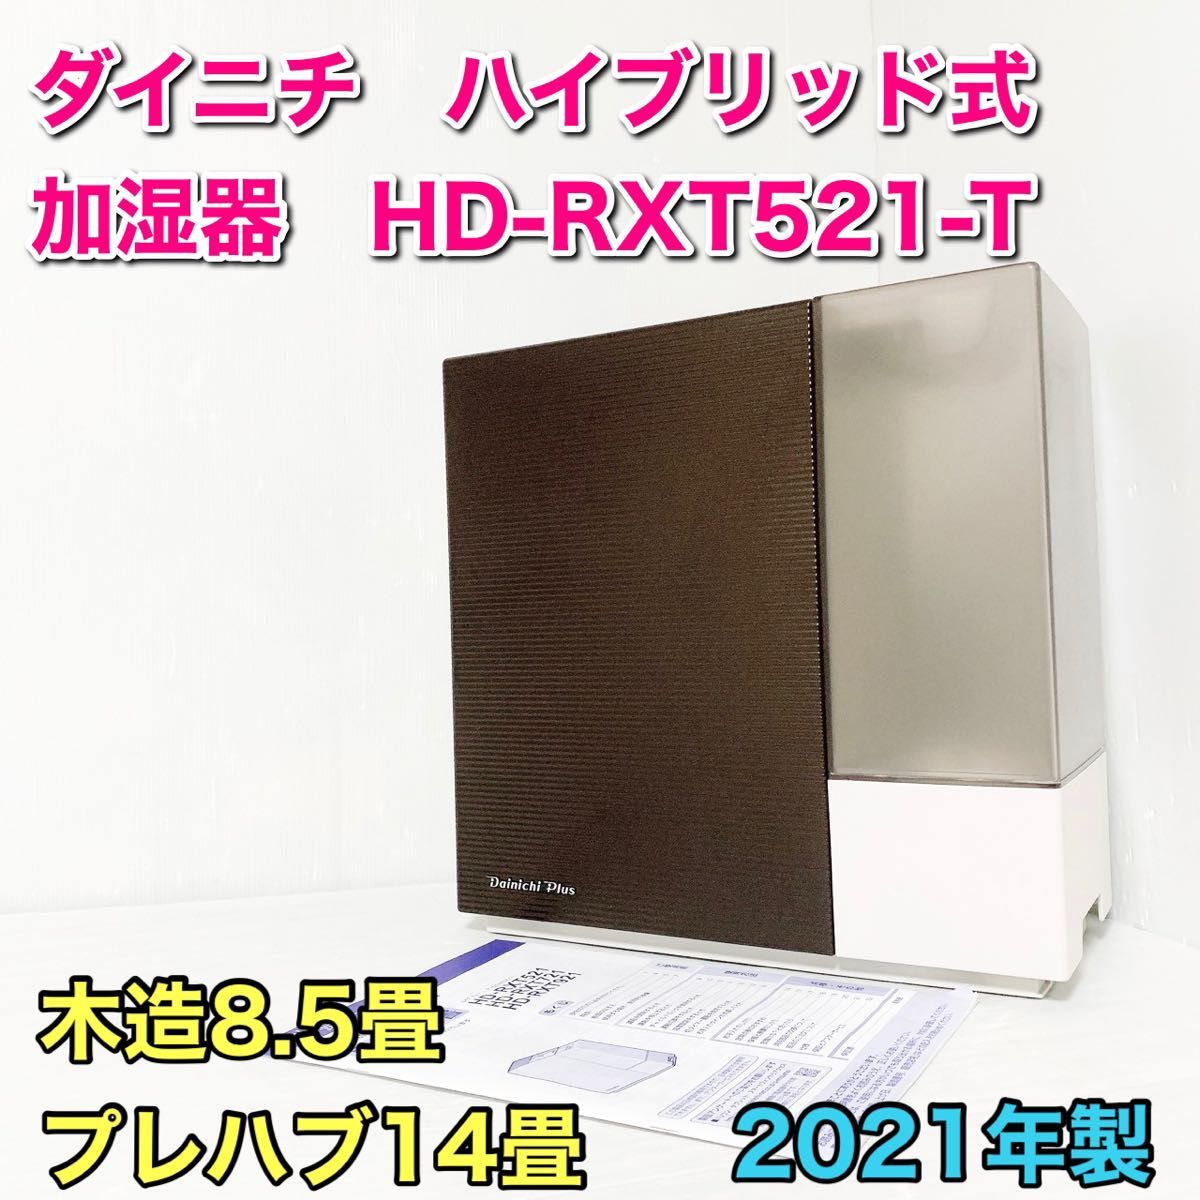 ダイニチ HD-RXT521-T ショコラブラウン ハイブリッド式加湿器 Yahoo